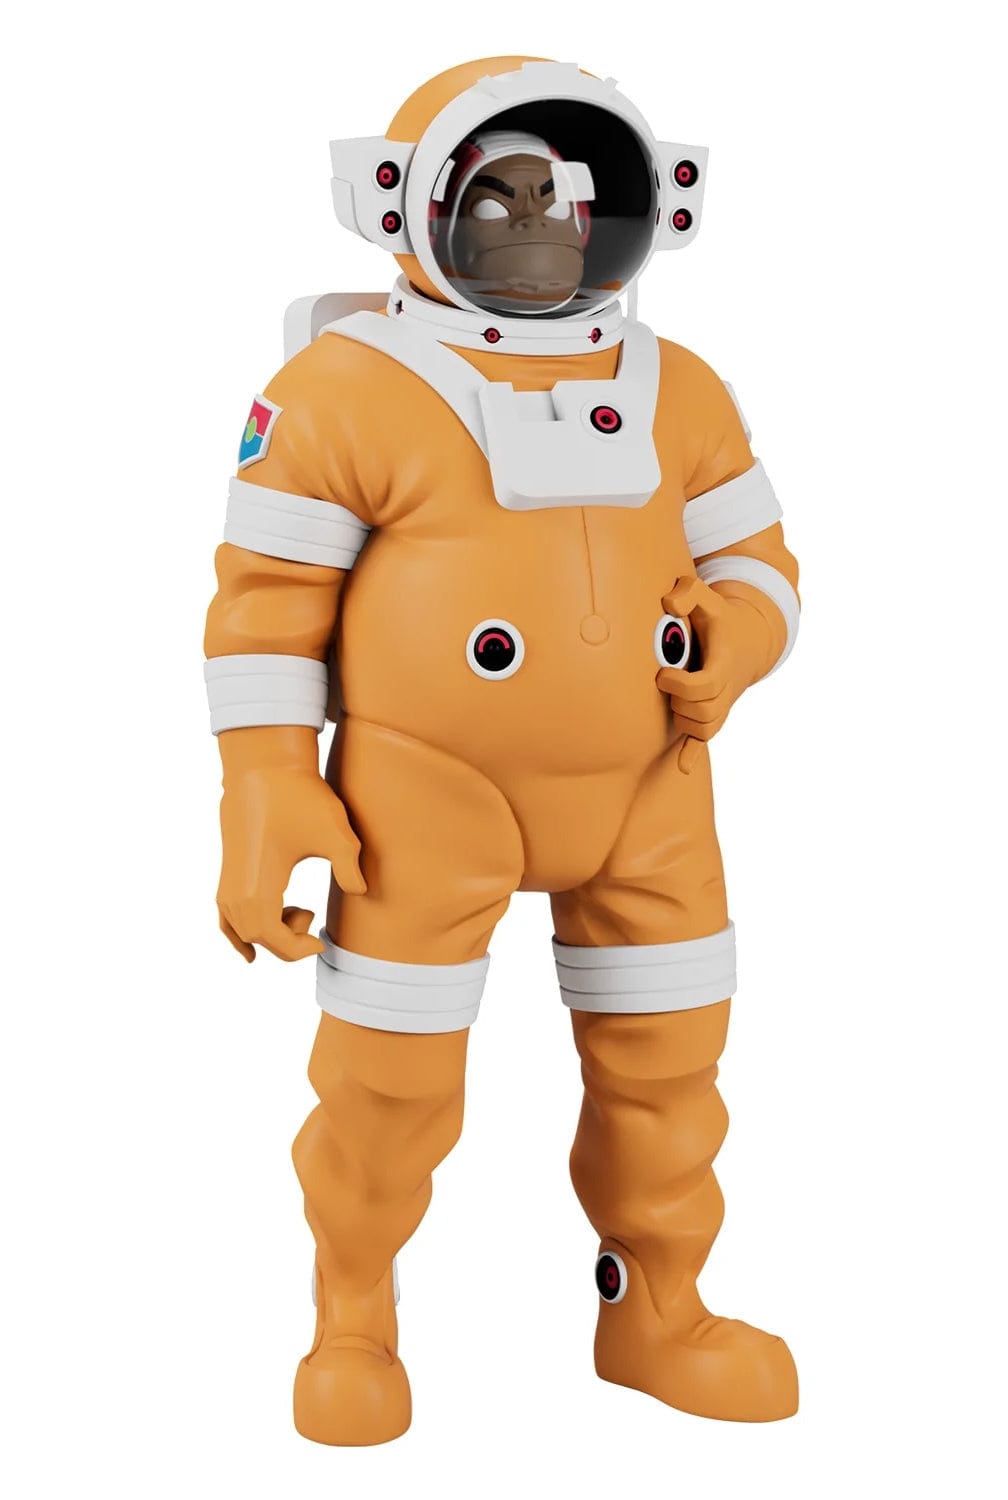 Superplastic x Gorillaz: Astronaut Russel 12"